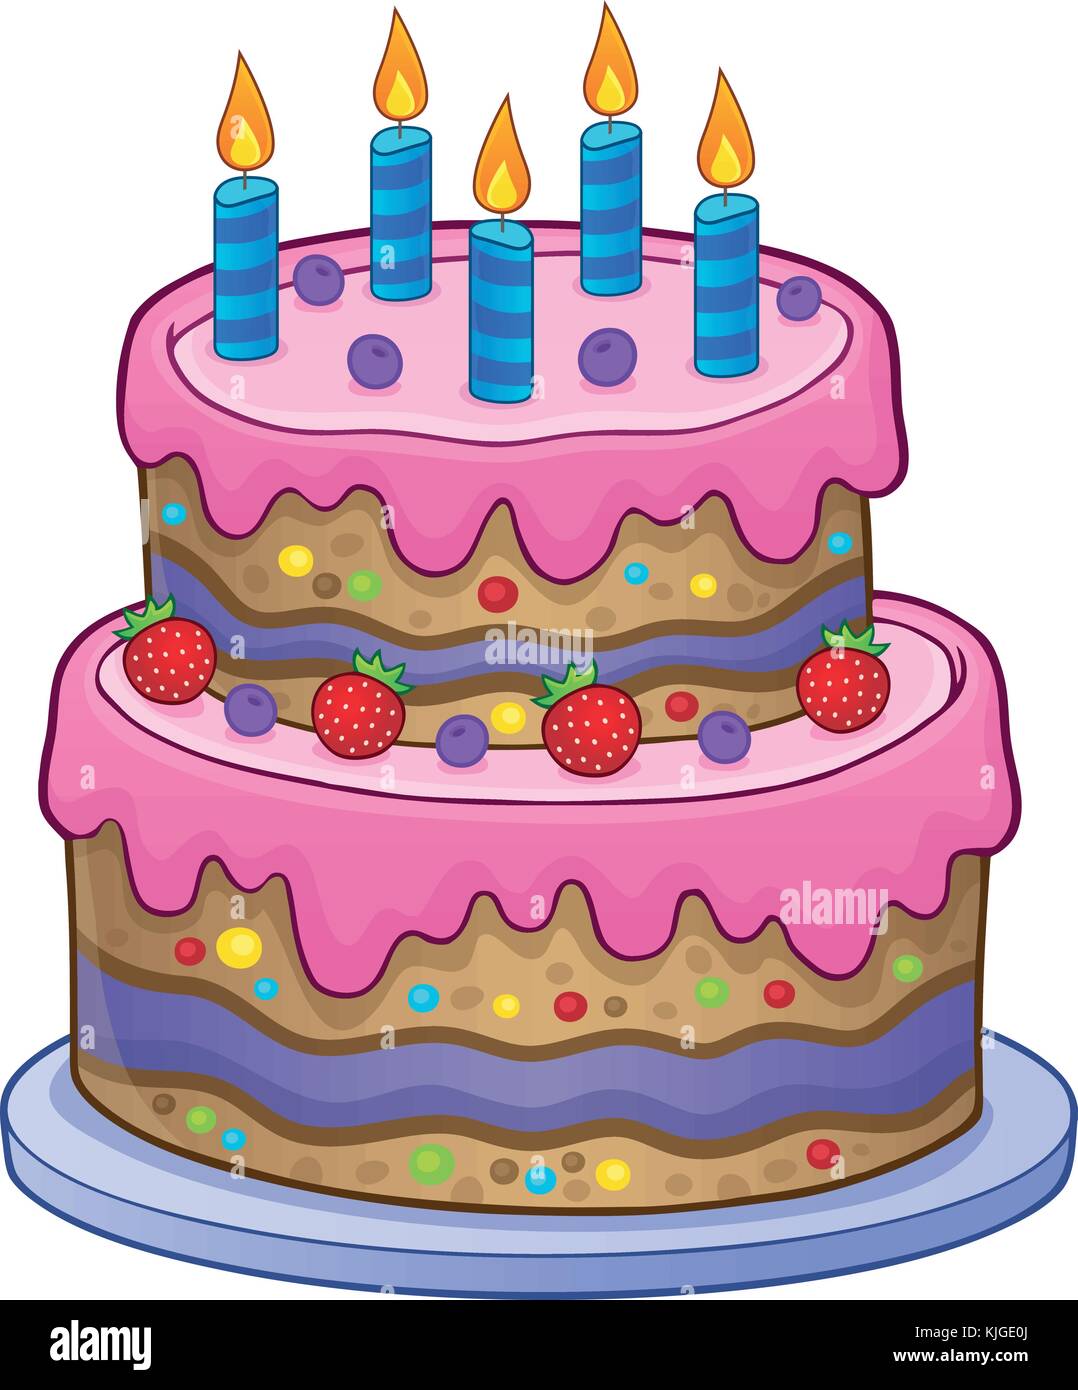 Imagen de una tarta de cumpleaños con velas